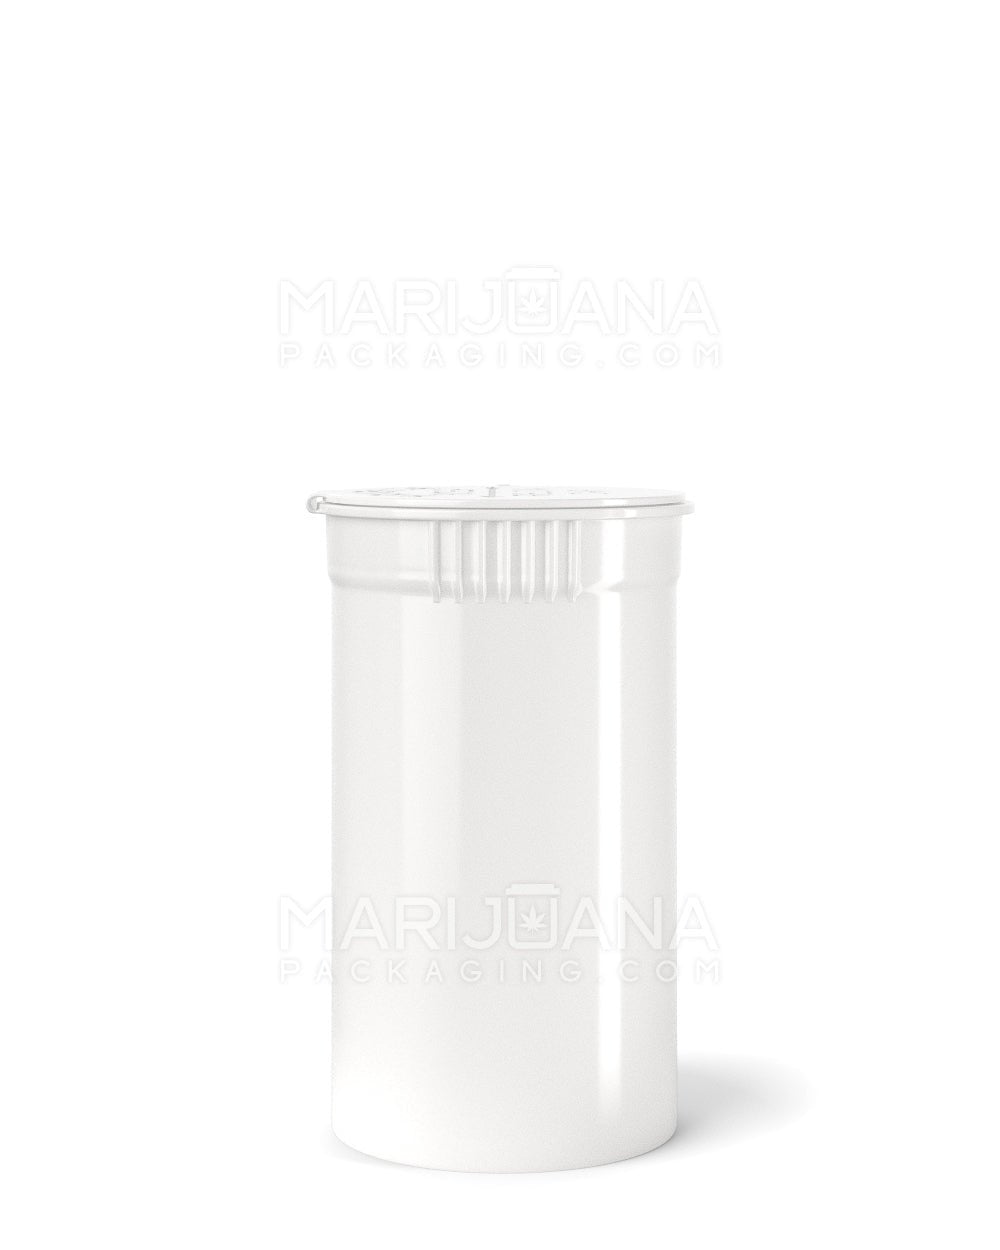 POLLEN GEAR | Child Resistant KSC Opaque White Pop Top Bottles | 19dr - 3.5g - 416 Count - 2